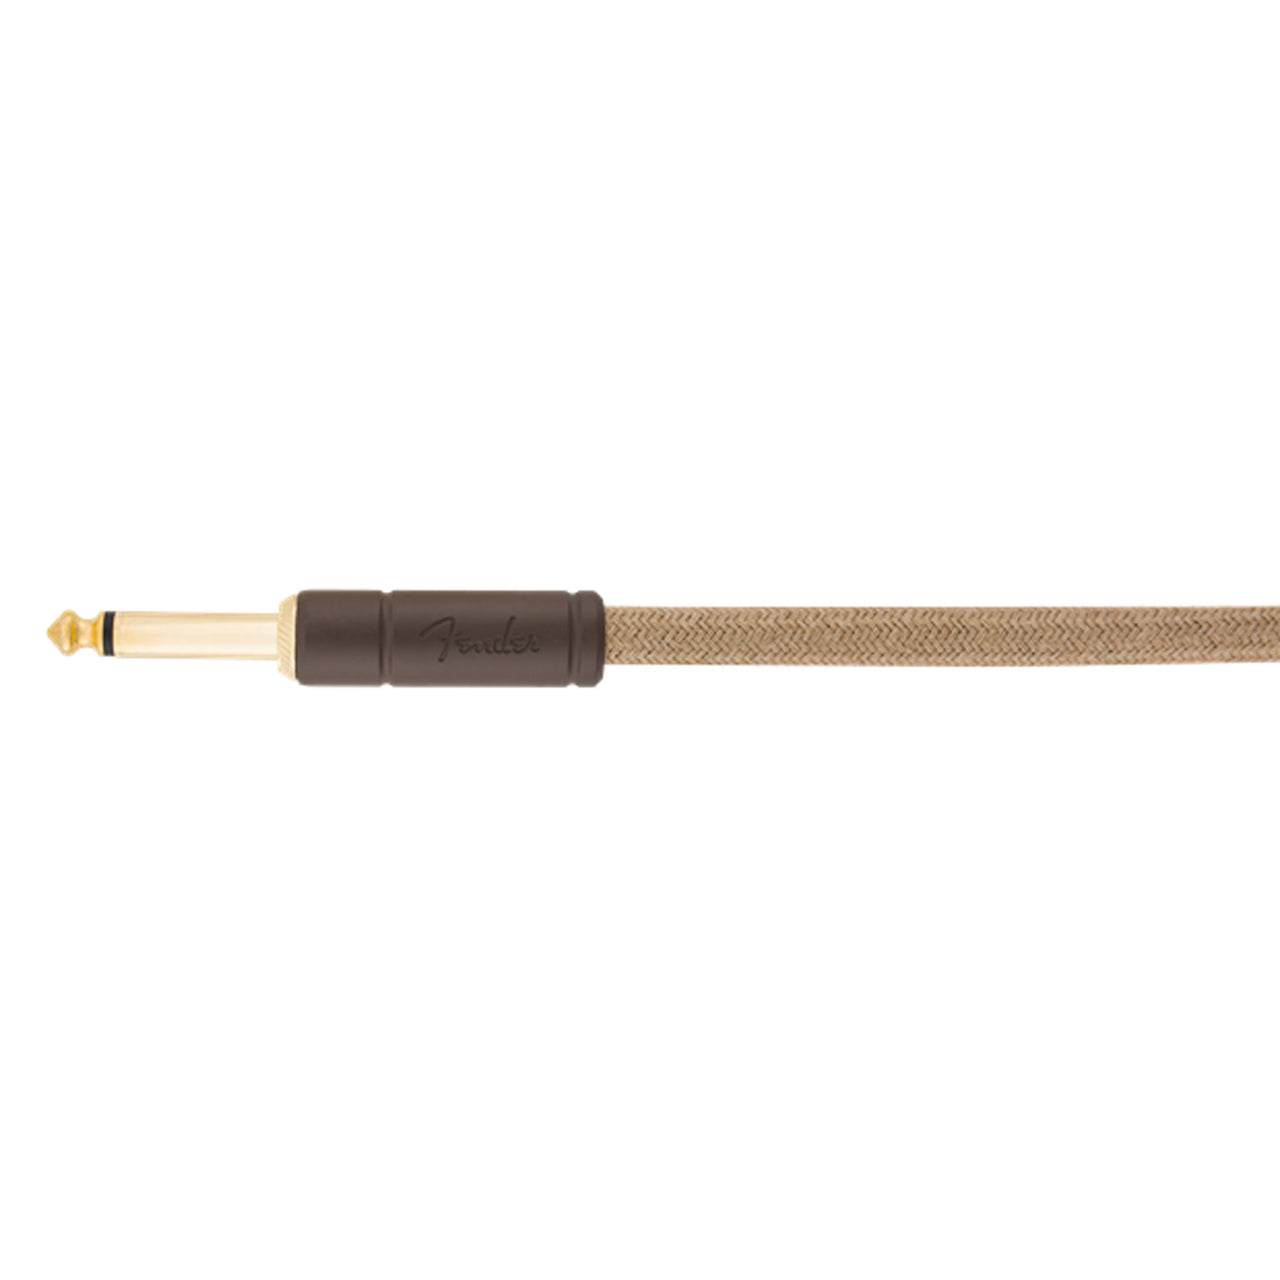 Cable Fender Para Instrumento Plug A Plug En L 3 Metros 0990910021